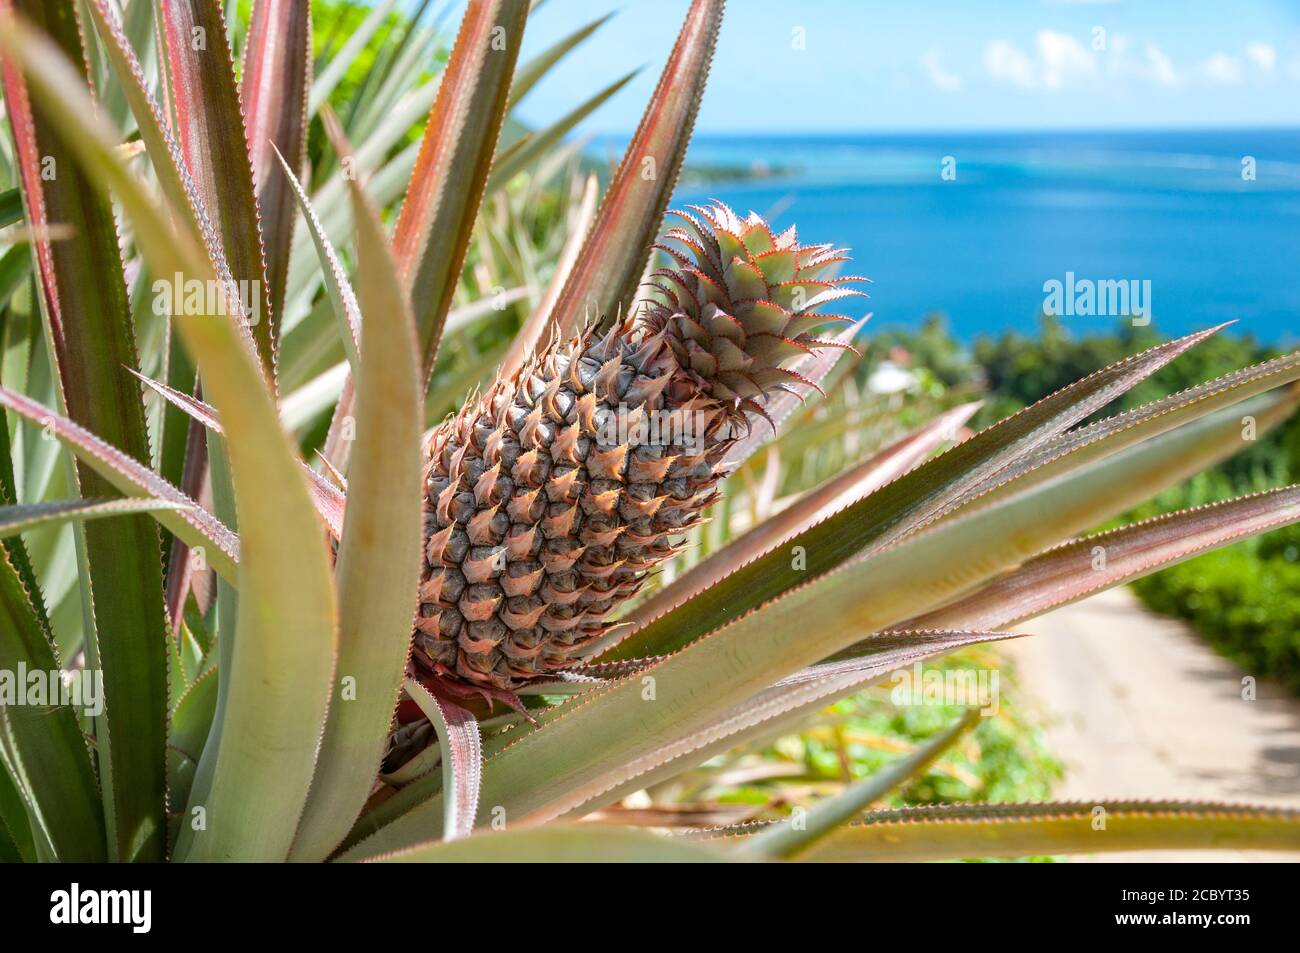 Ananaspflanze auf einem Hügel mit einem schönen Meerblick im Hintergrund. Stockfoto